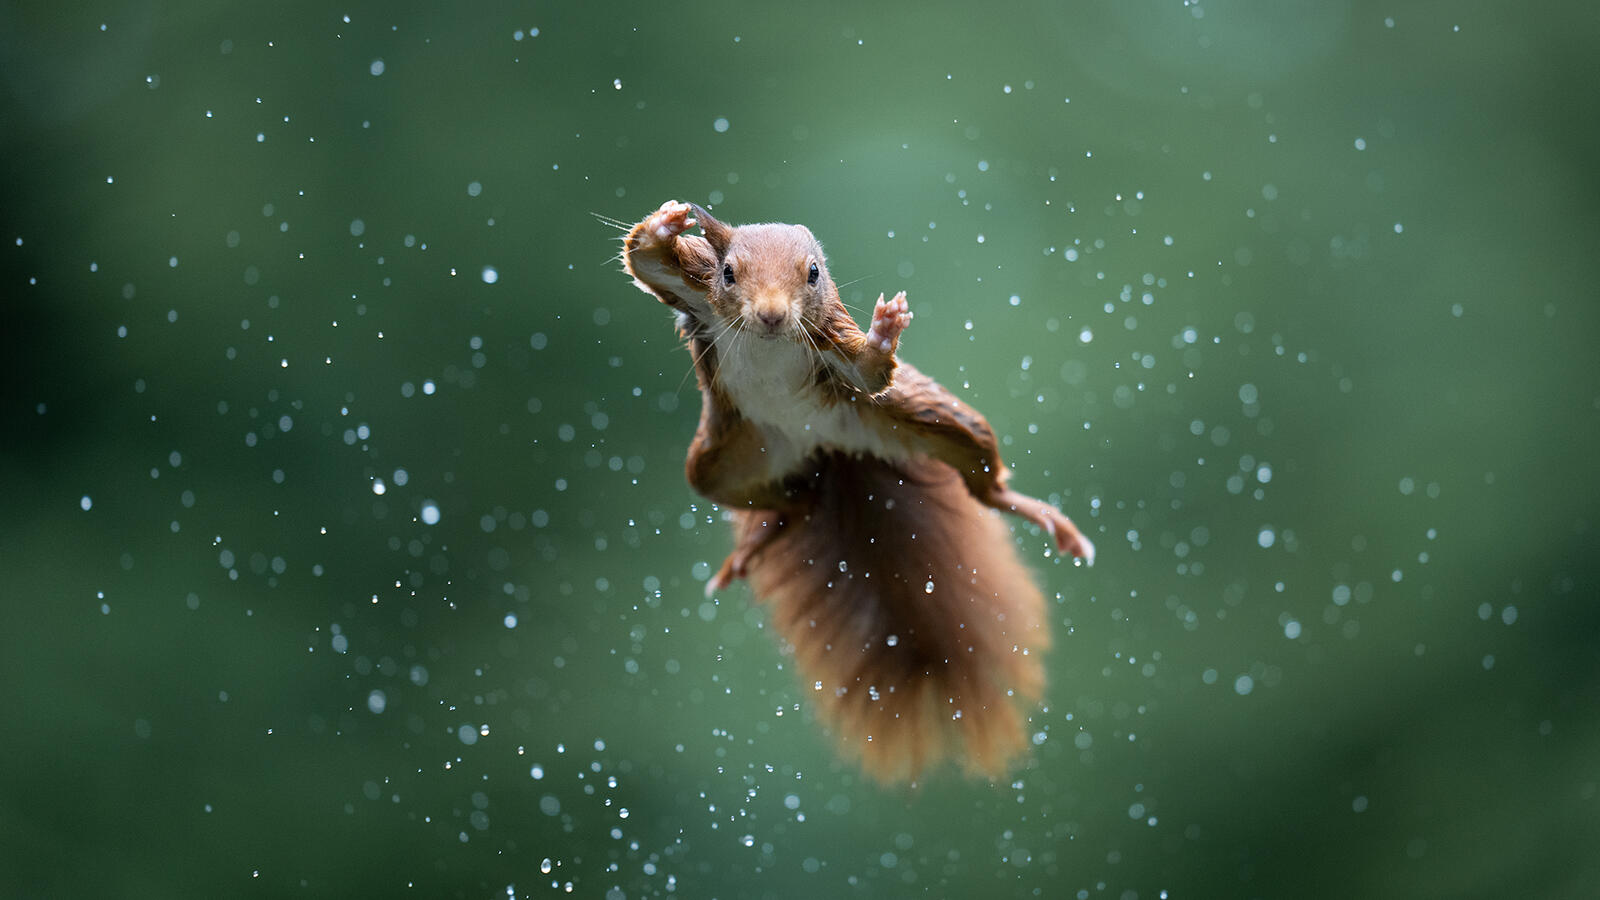 免费照片酷酷的松鼠在飞行